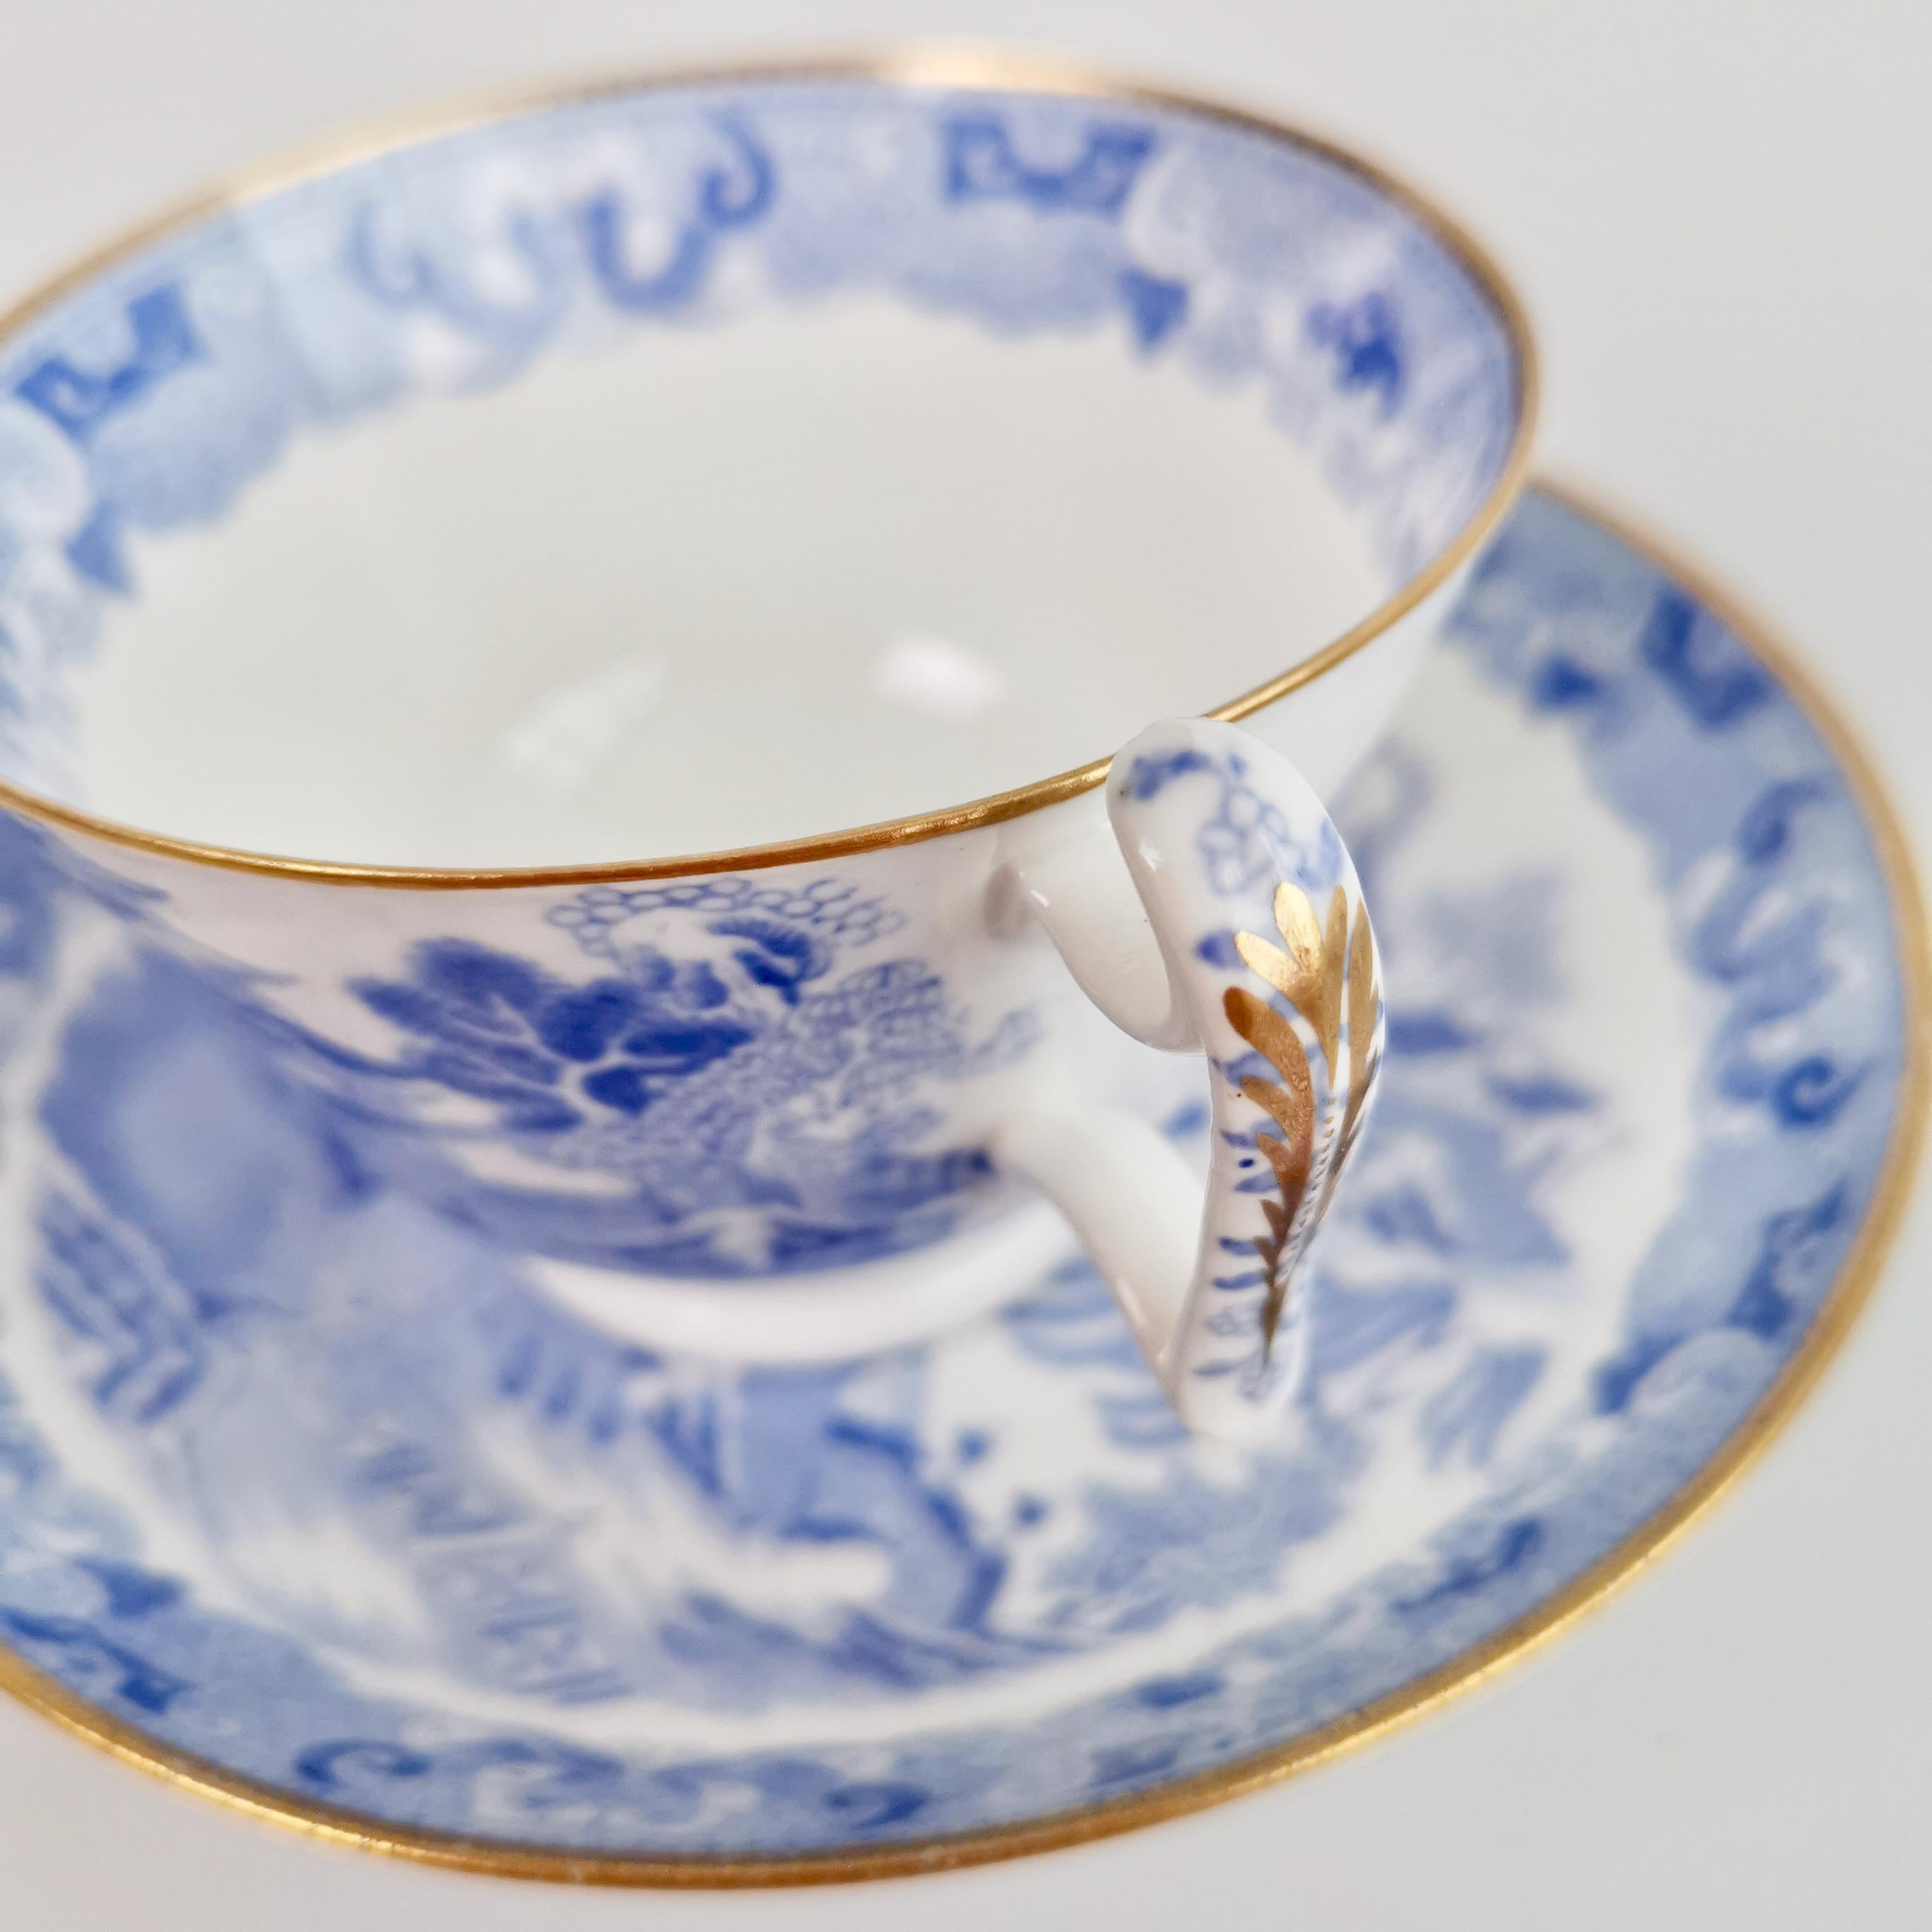 Spode Porcelain Teacup Trio, Brosely Pagoda Blue and White Transfer, ca 1815 7